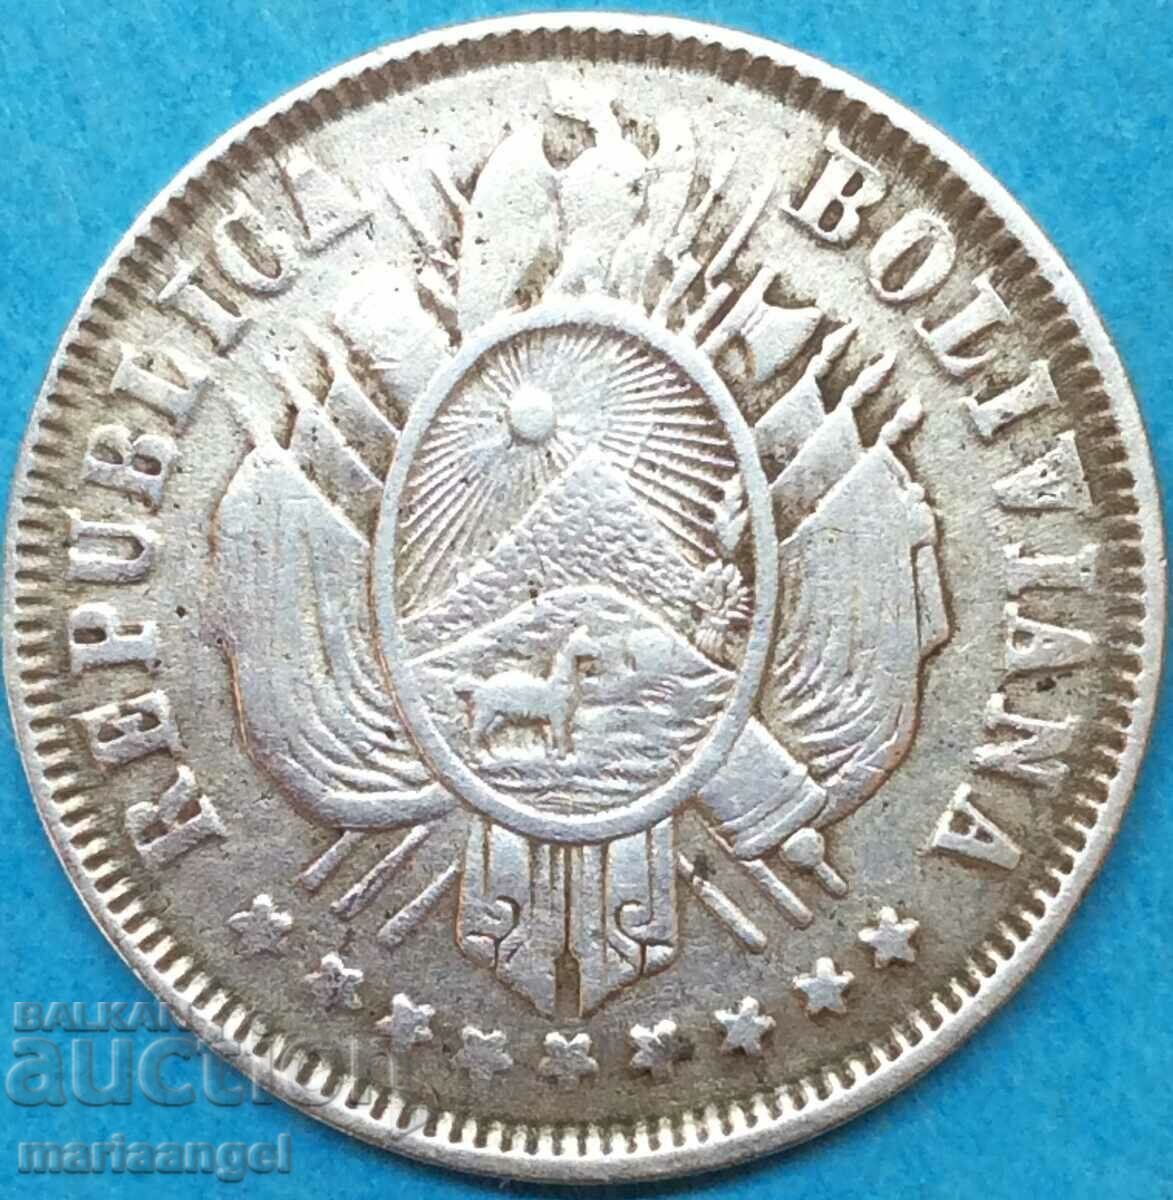 Βολιβία 1883 20 cents 4,58g ασήμι - αρκετά σπάνιο